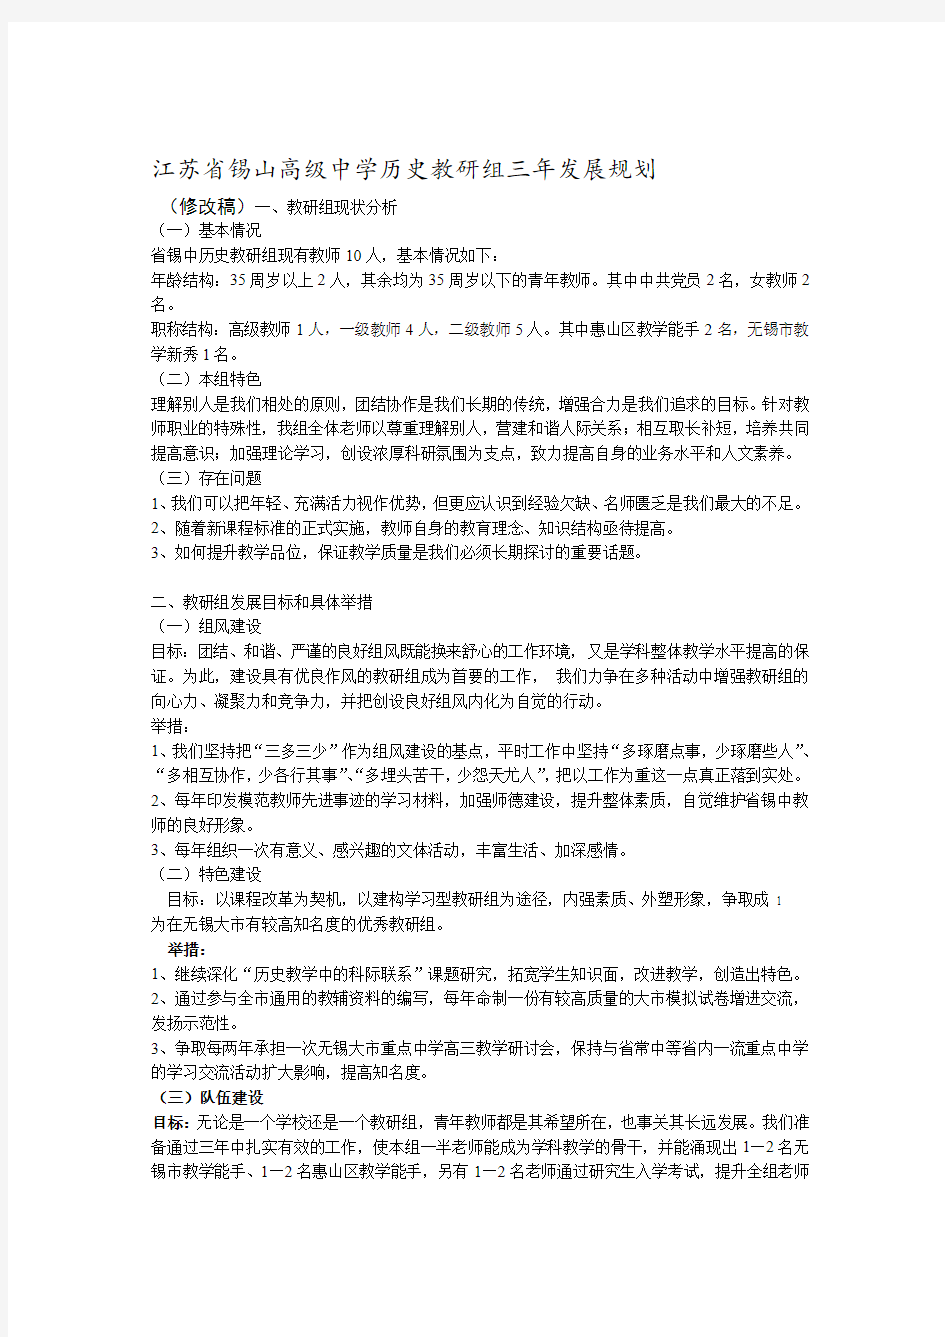 江苏省锡山高级中学历史教研组三年发展规划